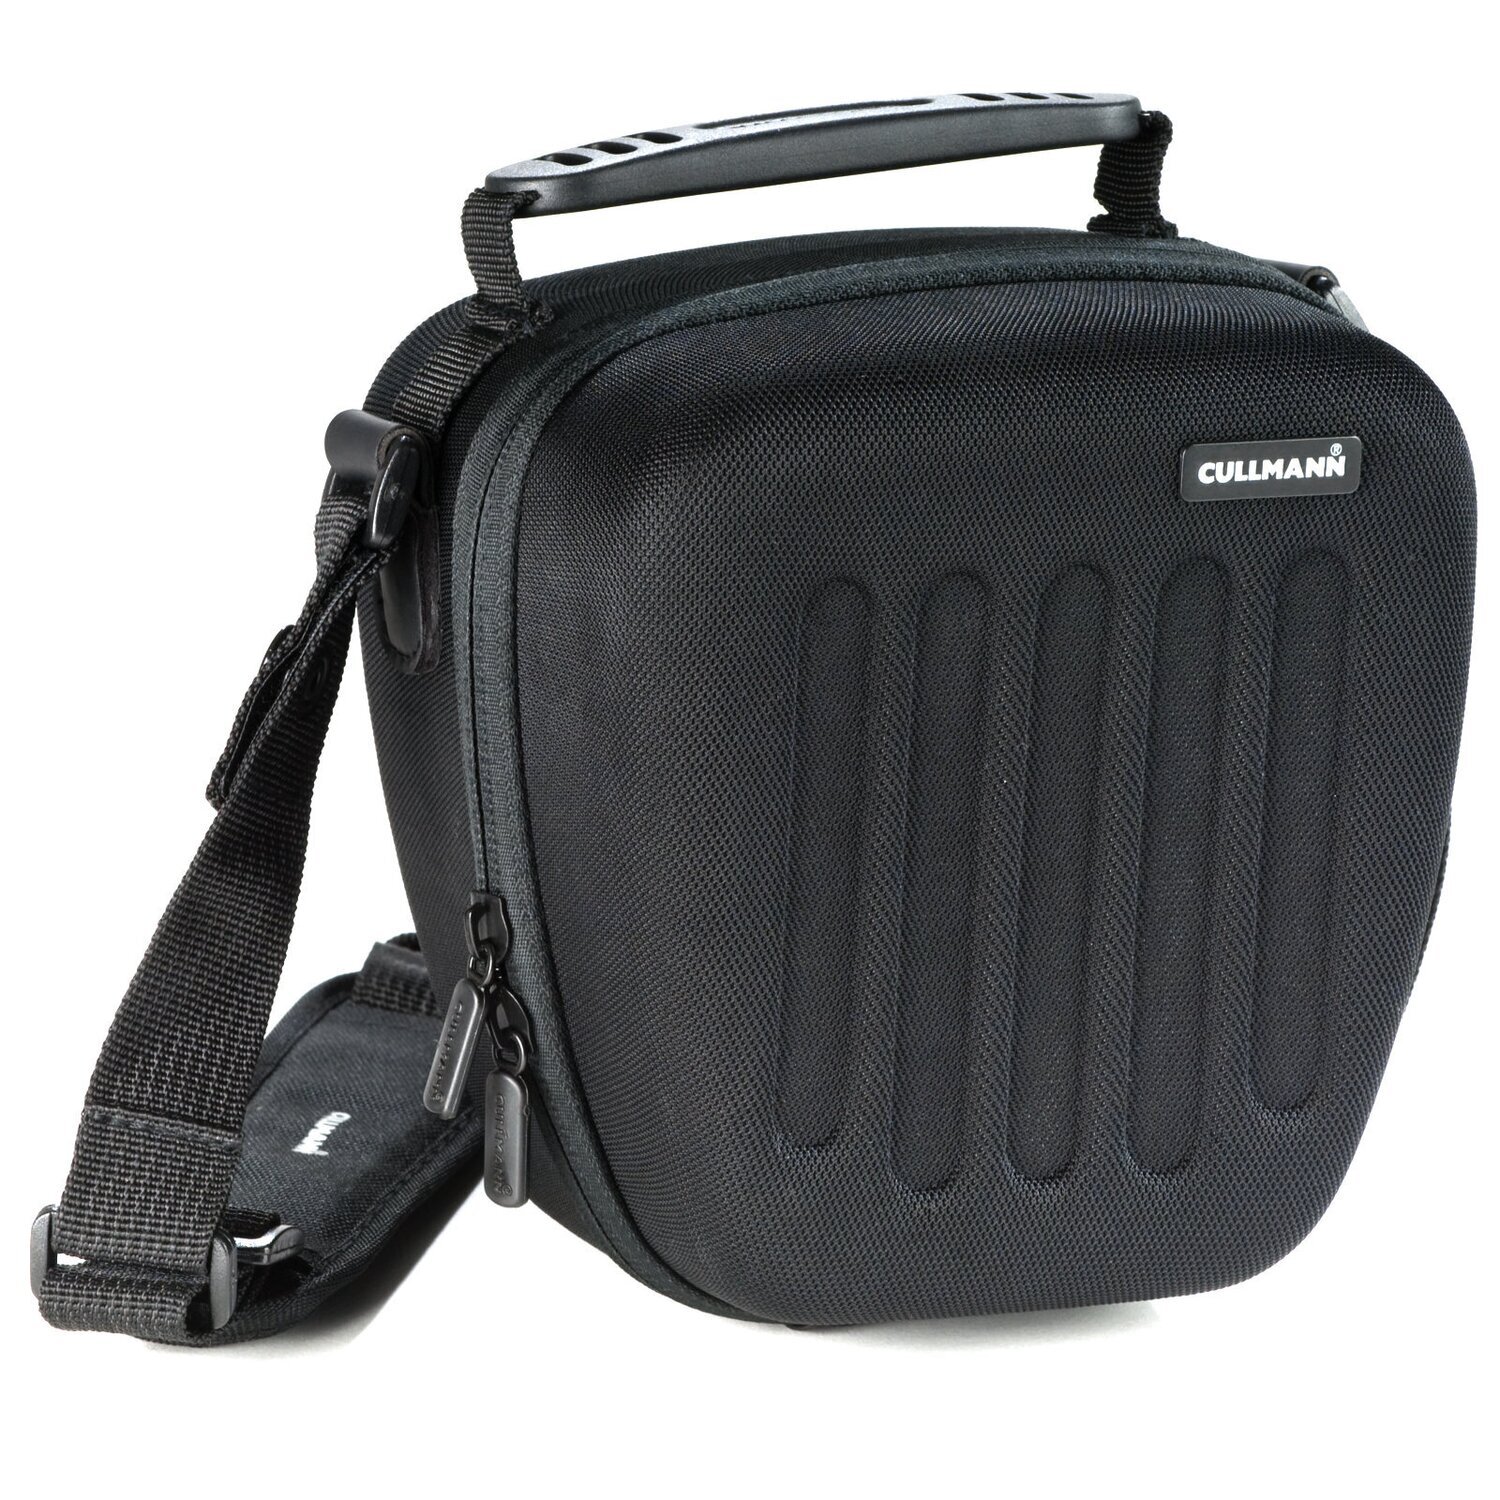 Hardcase Kameratasche passend für Nikon D5300 und 18-55mm Objektiv